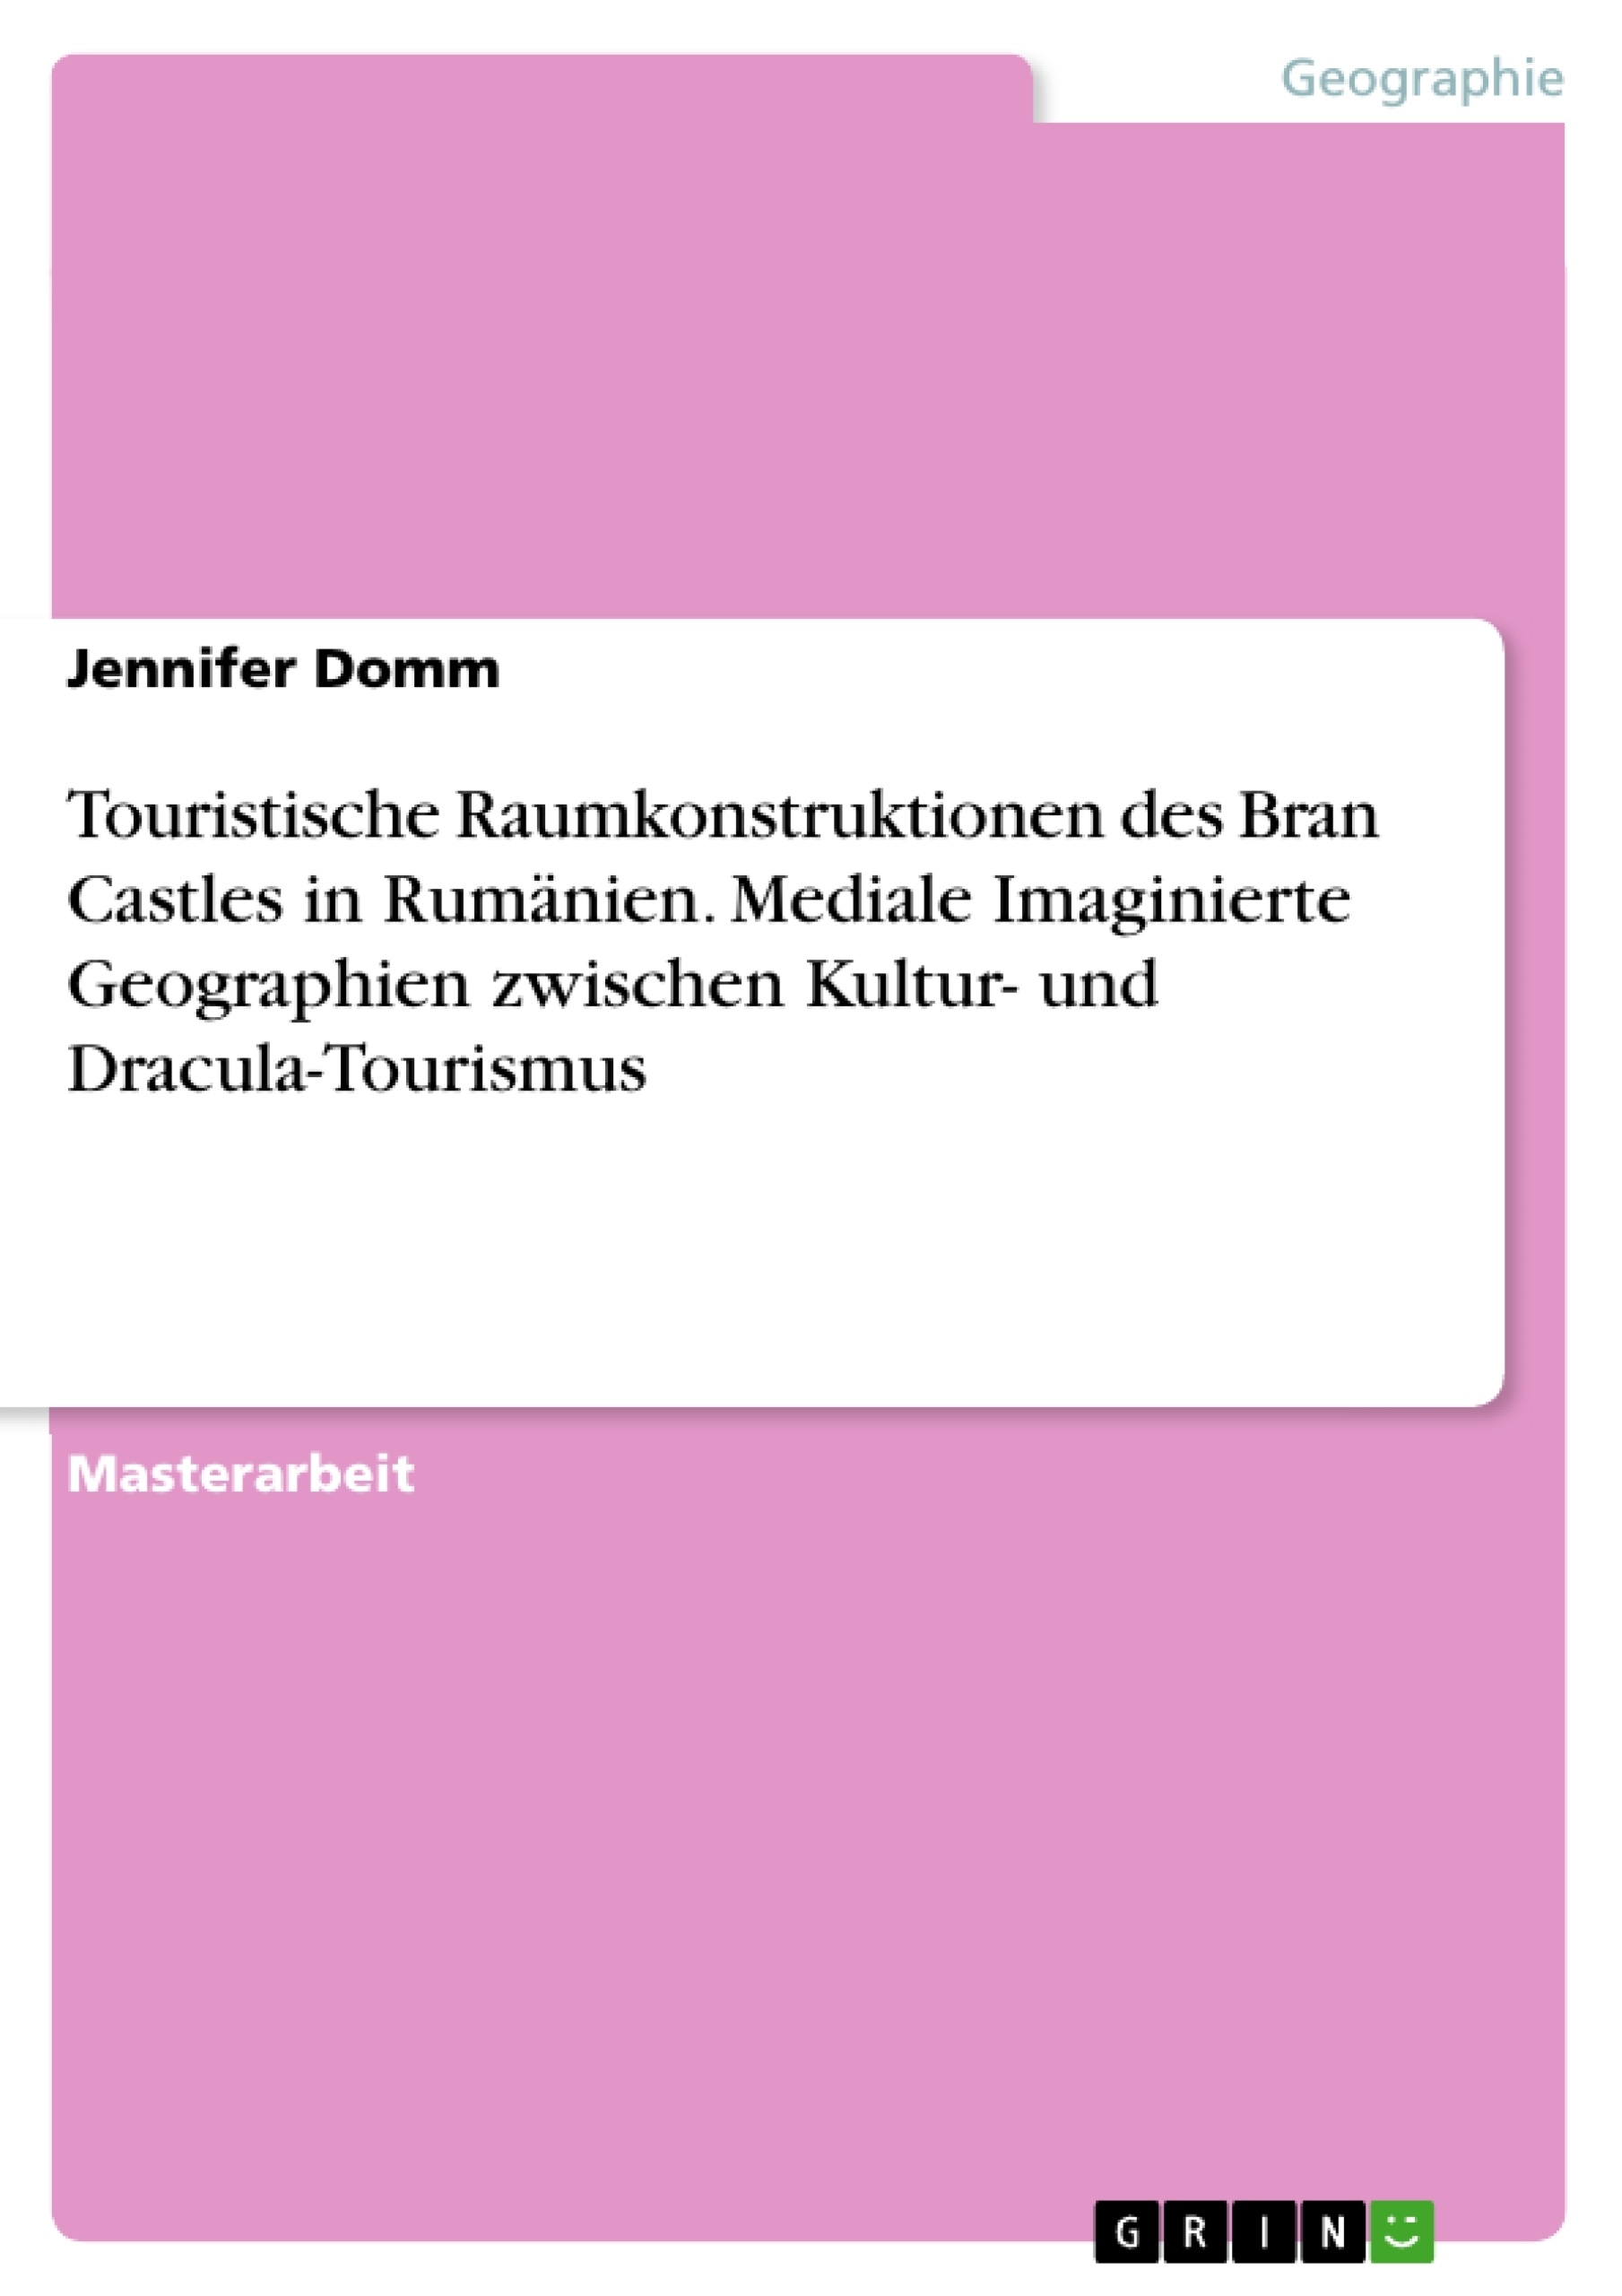 Título: Touristische Raumkonstruktionen des Bran Castles in Rumänien. Mediale Imaginierte Geographien zwischen Kultur- und Dracula-Tourismus